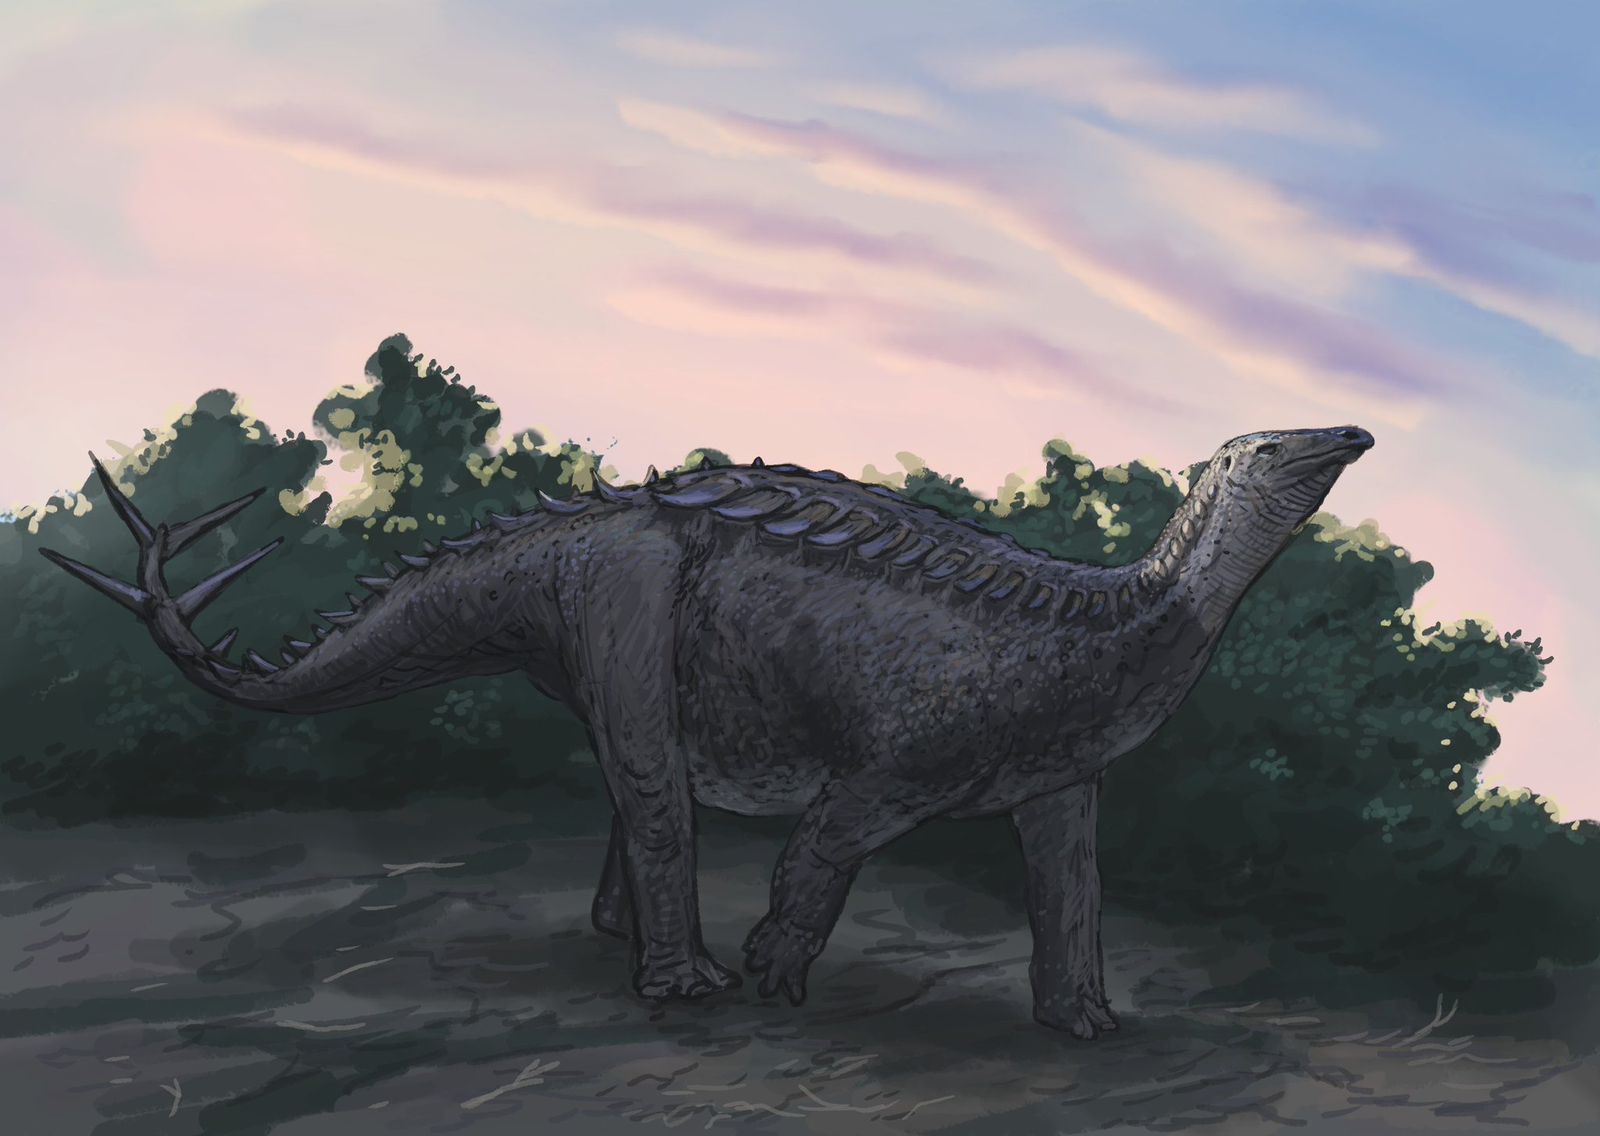 المغرب : اكتشاف نوع جديد من الديناصورات ببولمان (الأطلس المتوسط) عاش قبل حوالي 165 مليون سنة.